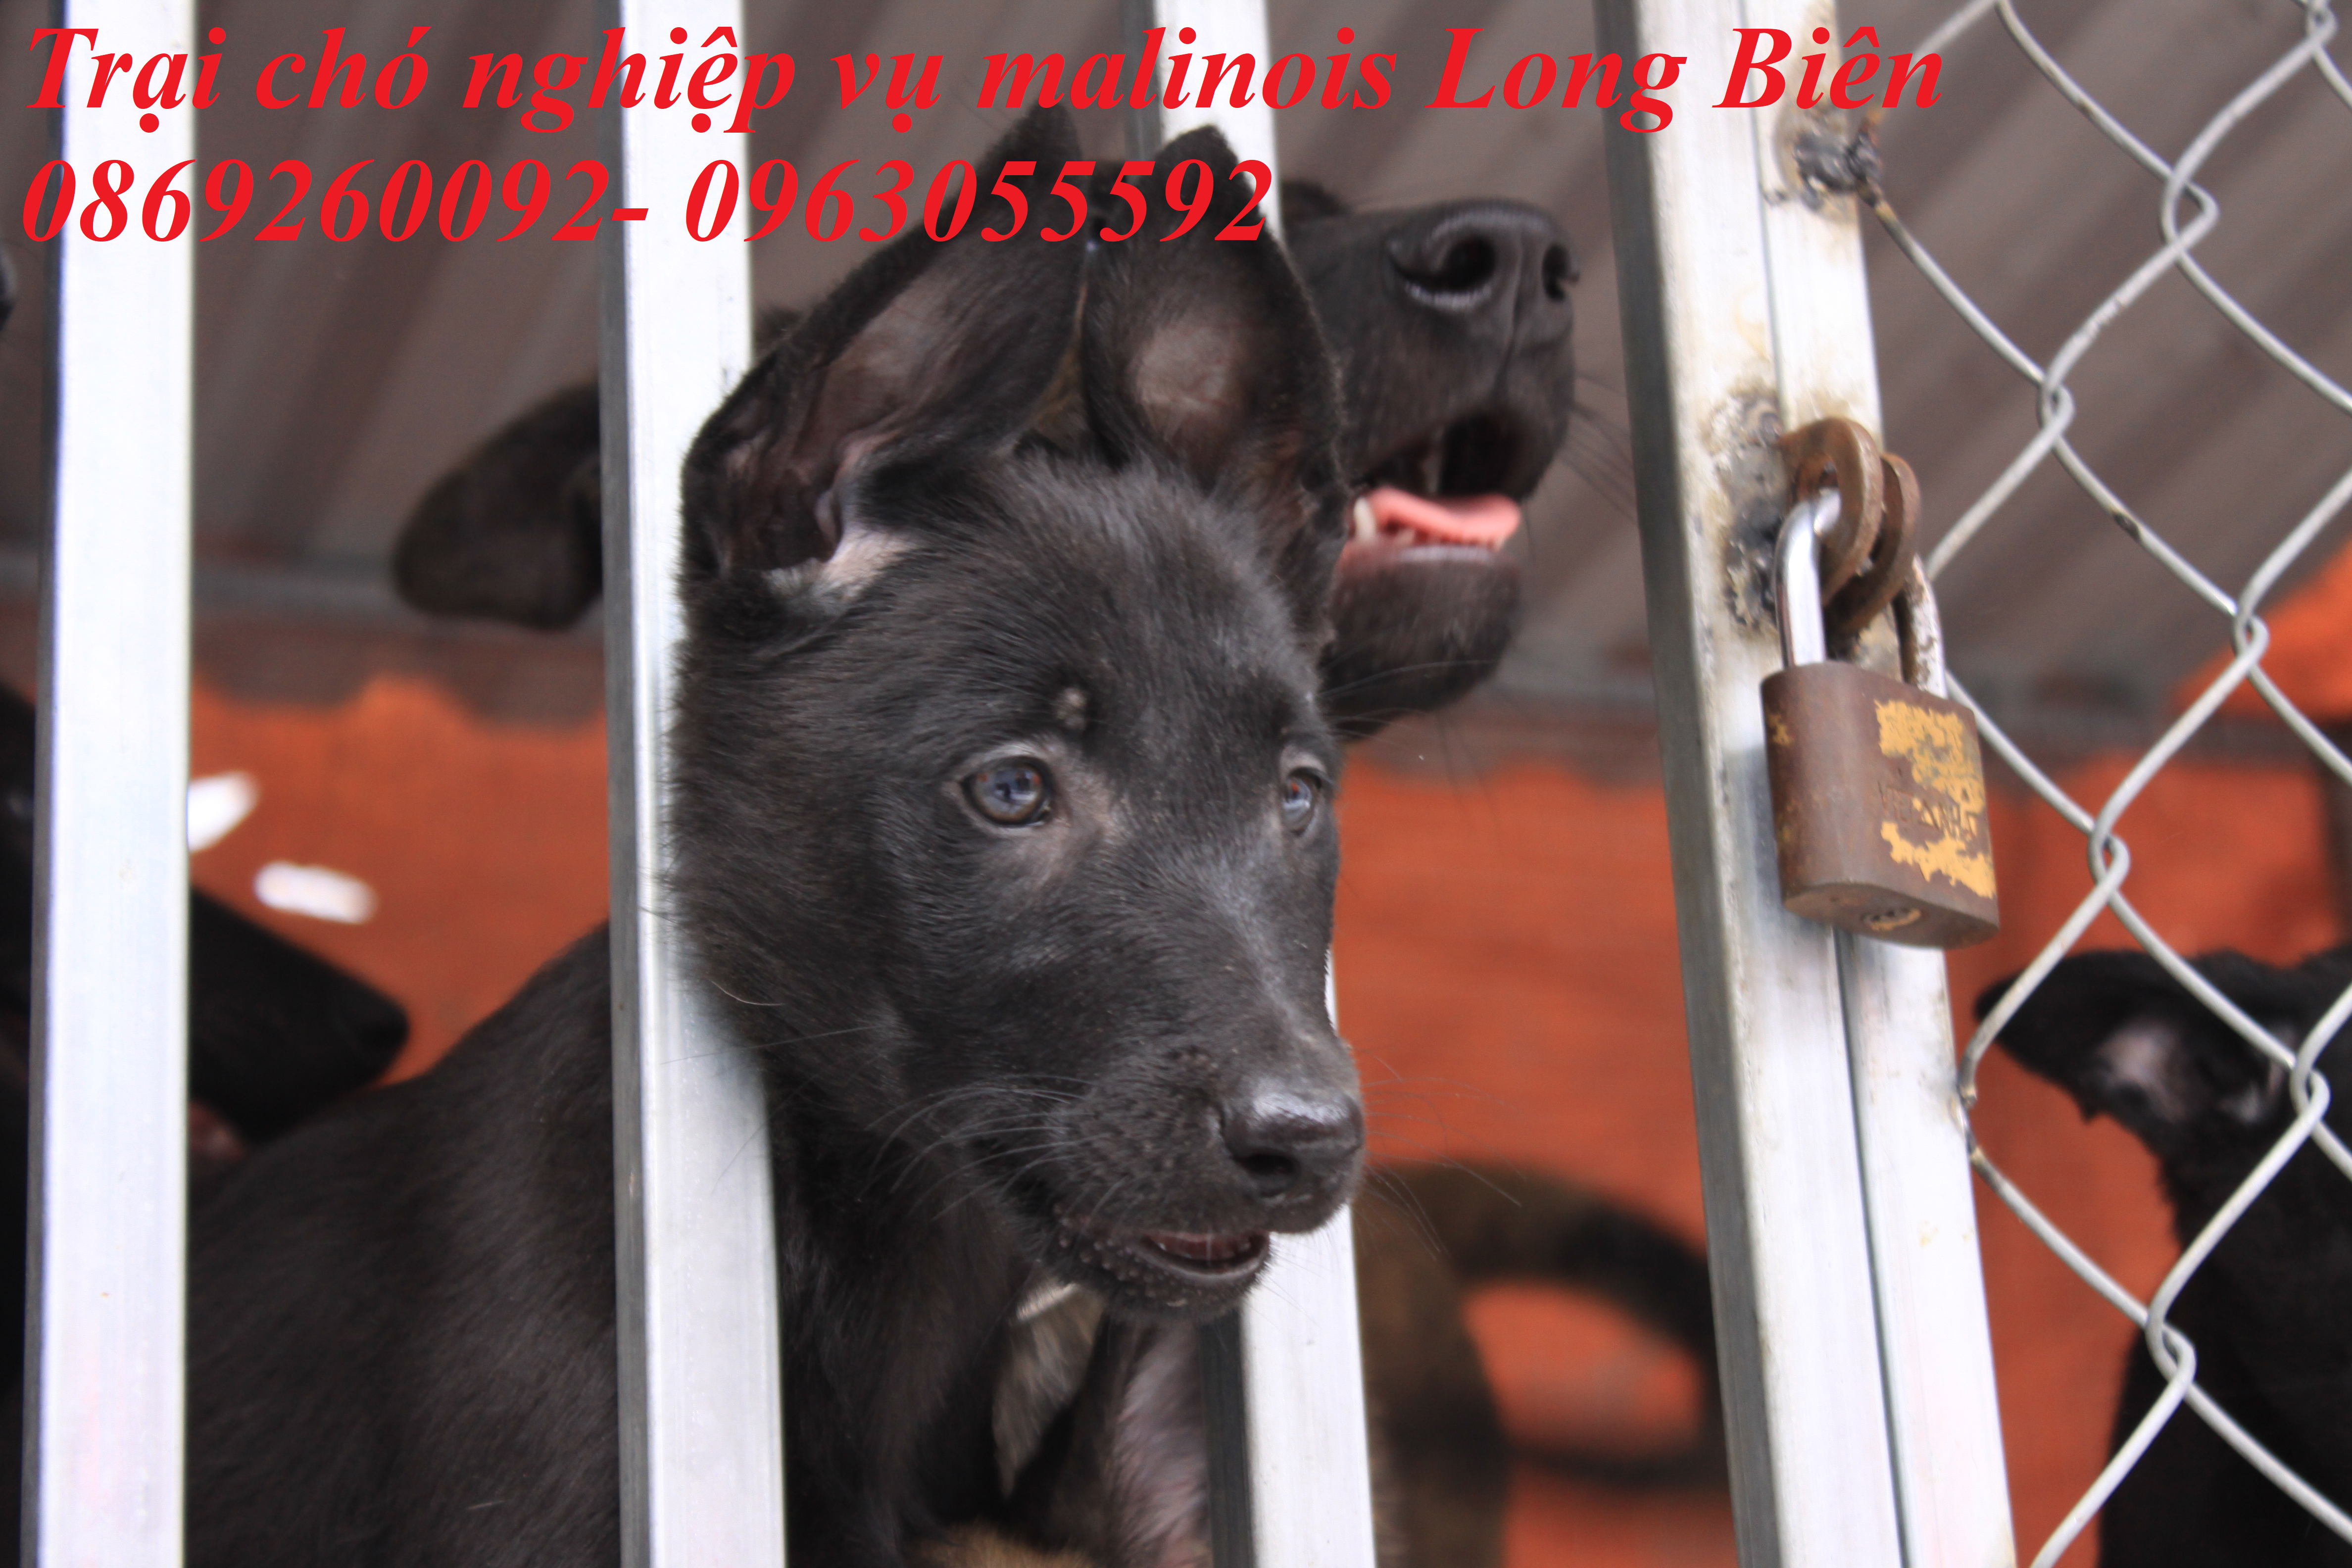 Chó con Malinois đen tuyền tại trại chó Malibois Long Biên